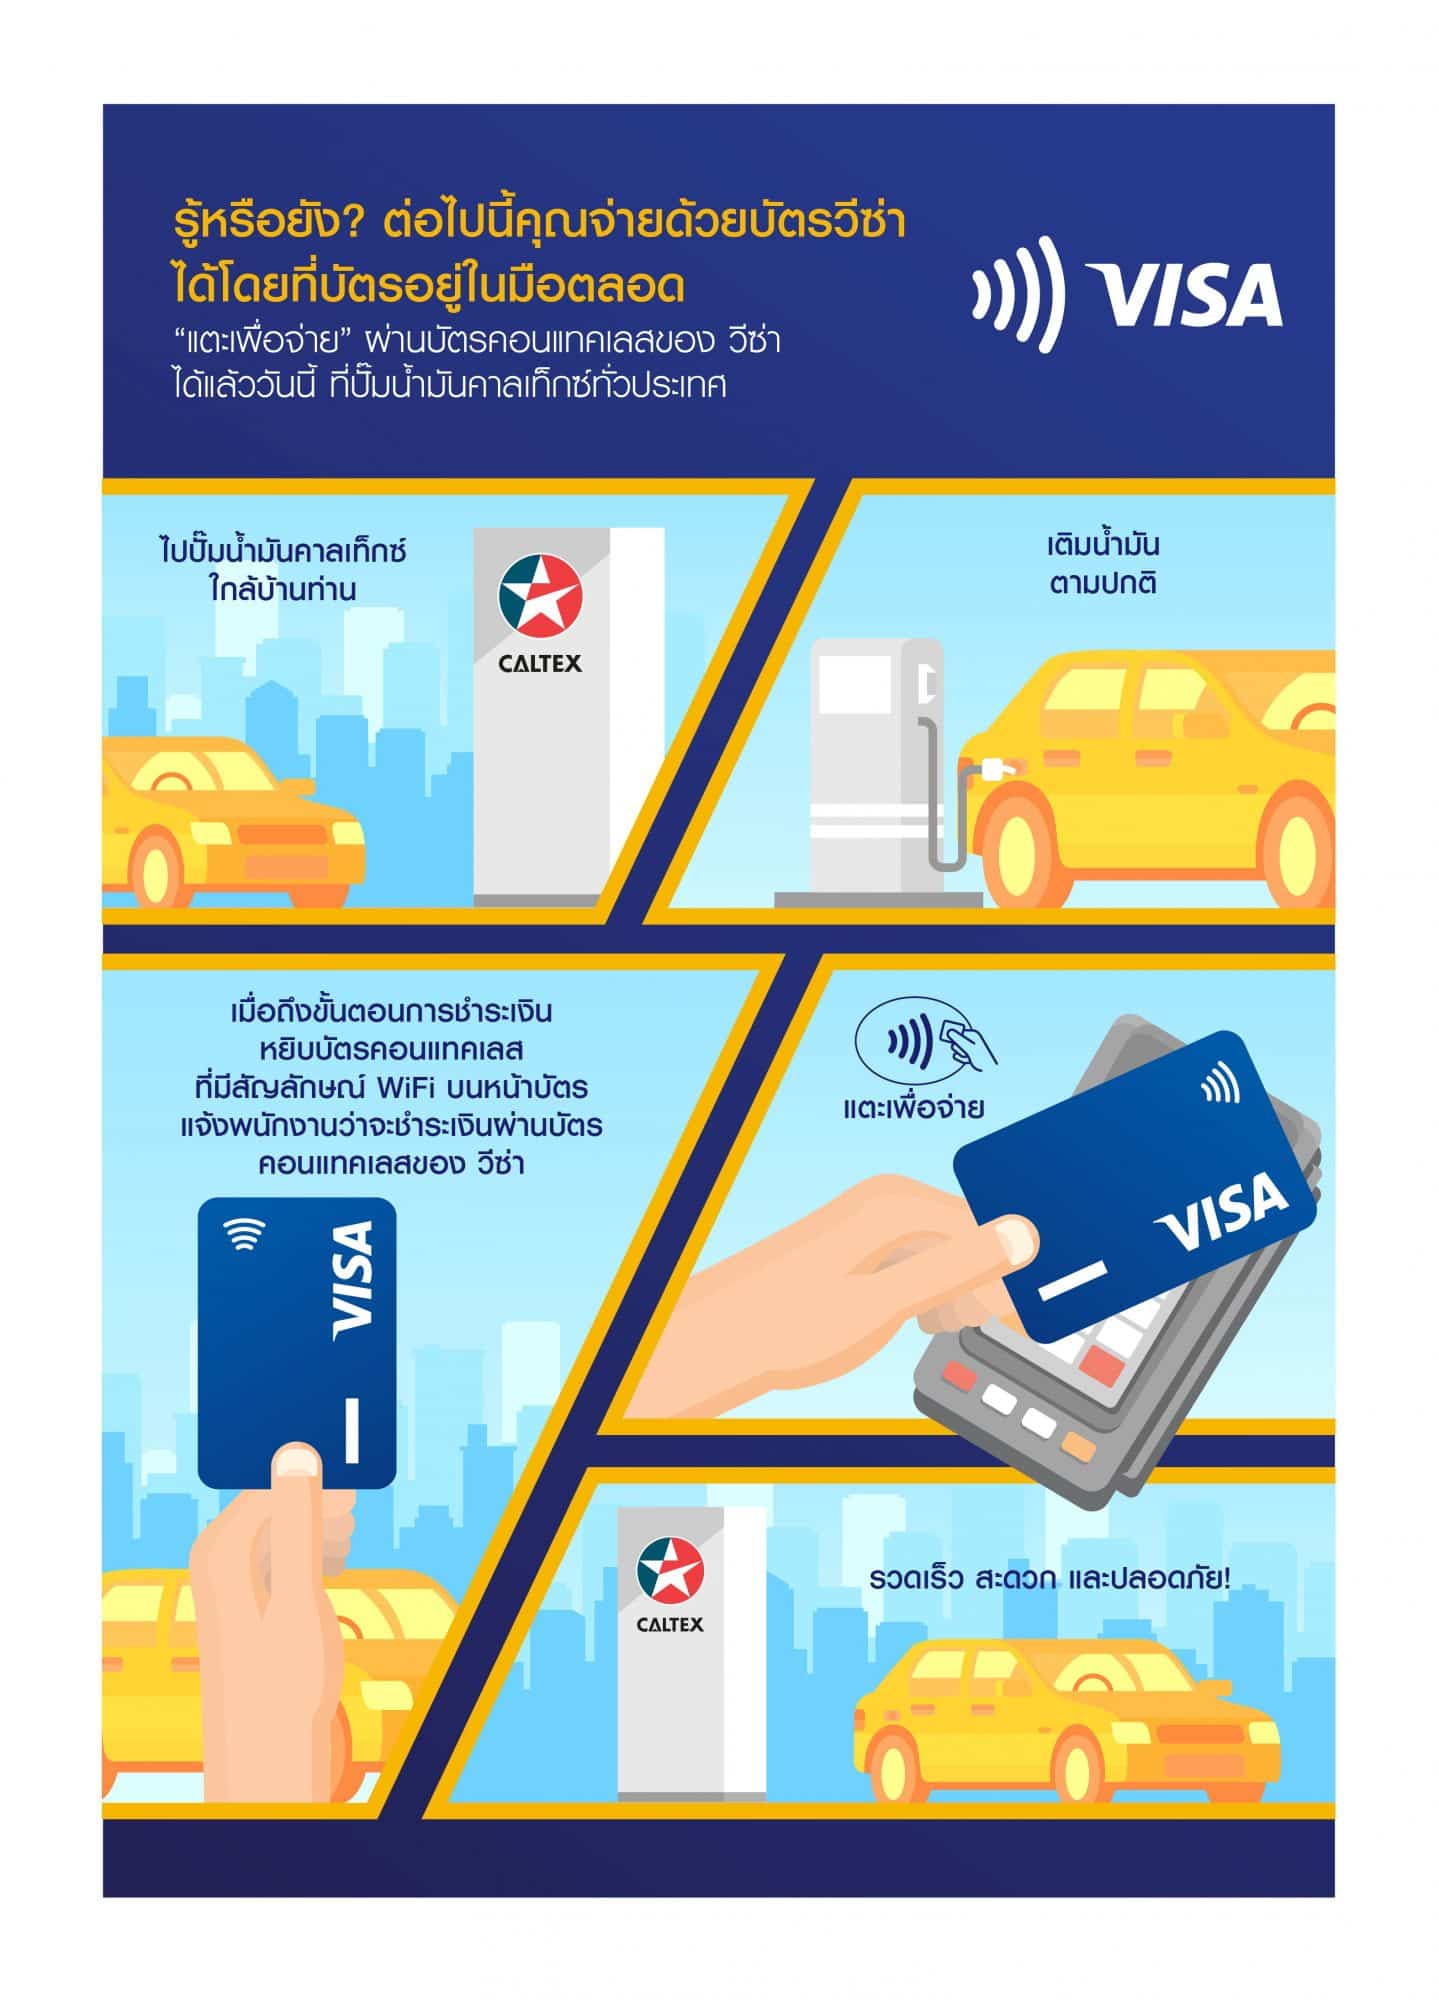 วีซ่า จับมือ คาลเท็กซ์ เปิดให้บริการการชำระเงินแบบ คอนแทคเลสในปั๊มน้ำมันทั่วประเทศเป็นครั้งแรกในไทย 5